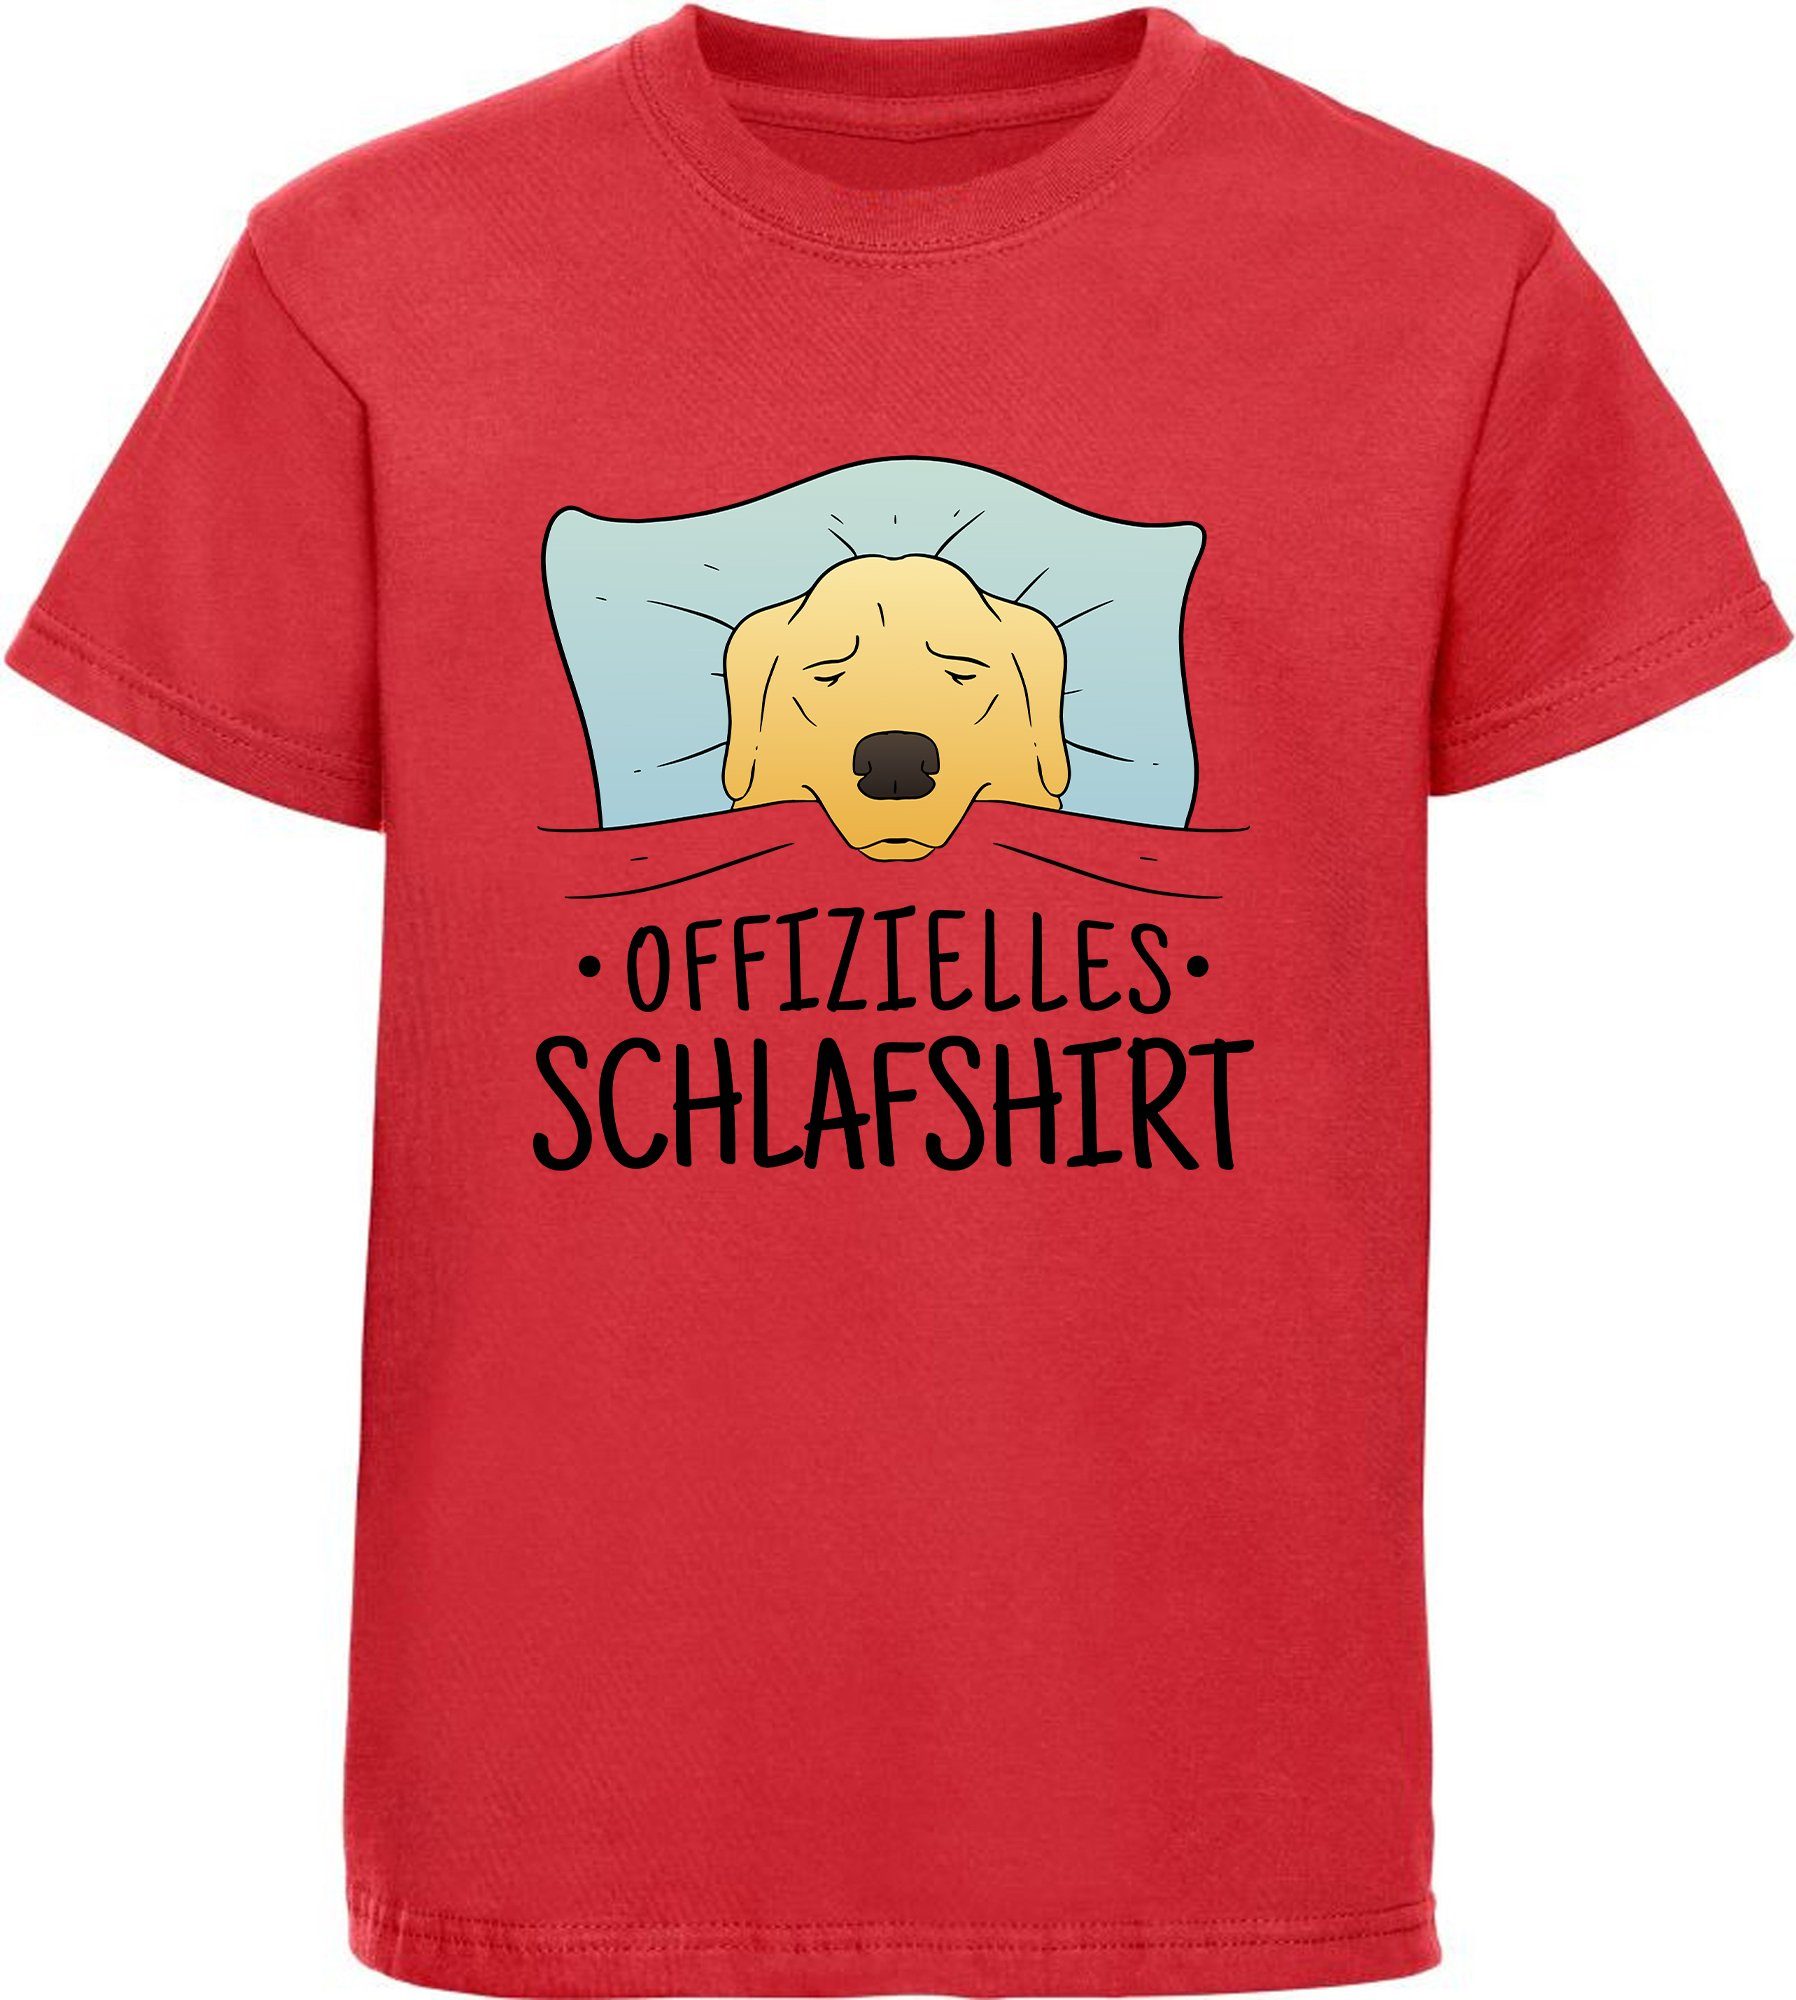 MyDesign24 T-Shirt Kinder Hunde Print Shirt bedruckt - Offizielles Schlafshirt Baumwollshirt mit Aufdruck, i247 rot